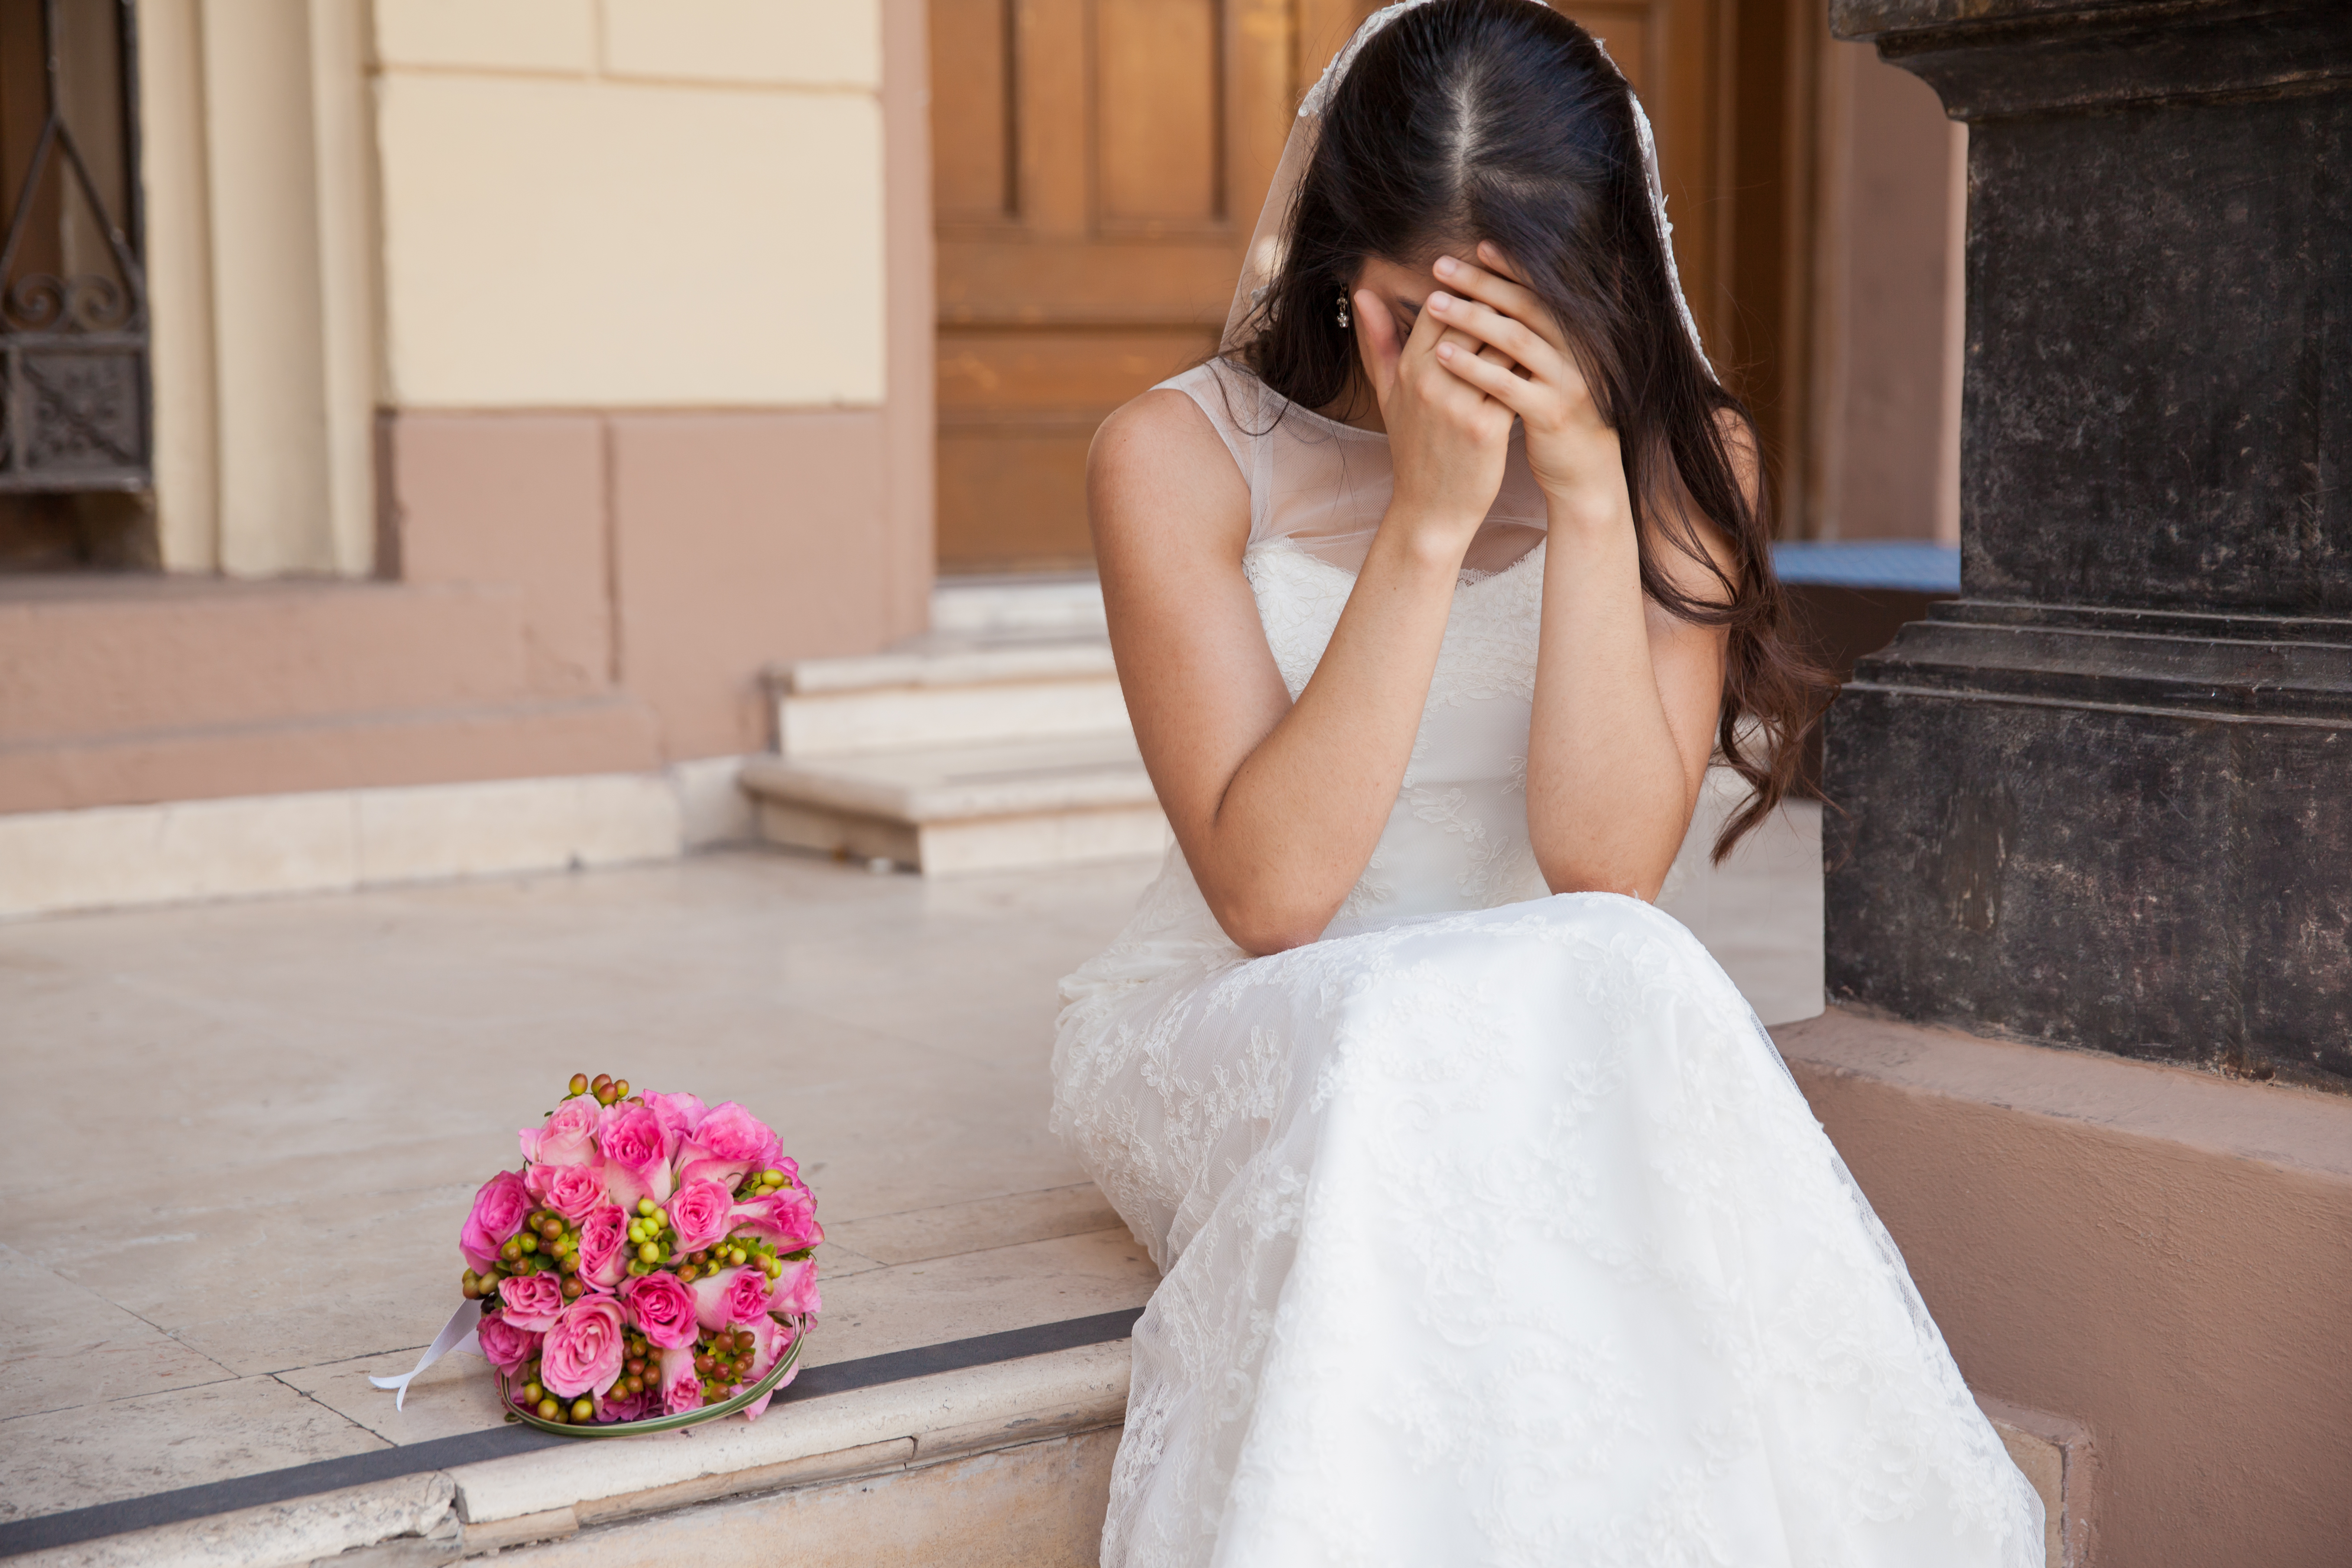 Une mariée sans espoir qui pleure le jour de son mariage | Source : Shutterstock